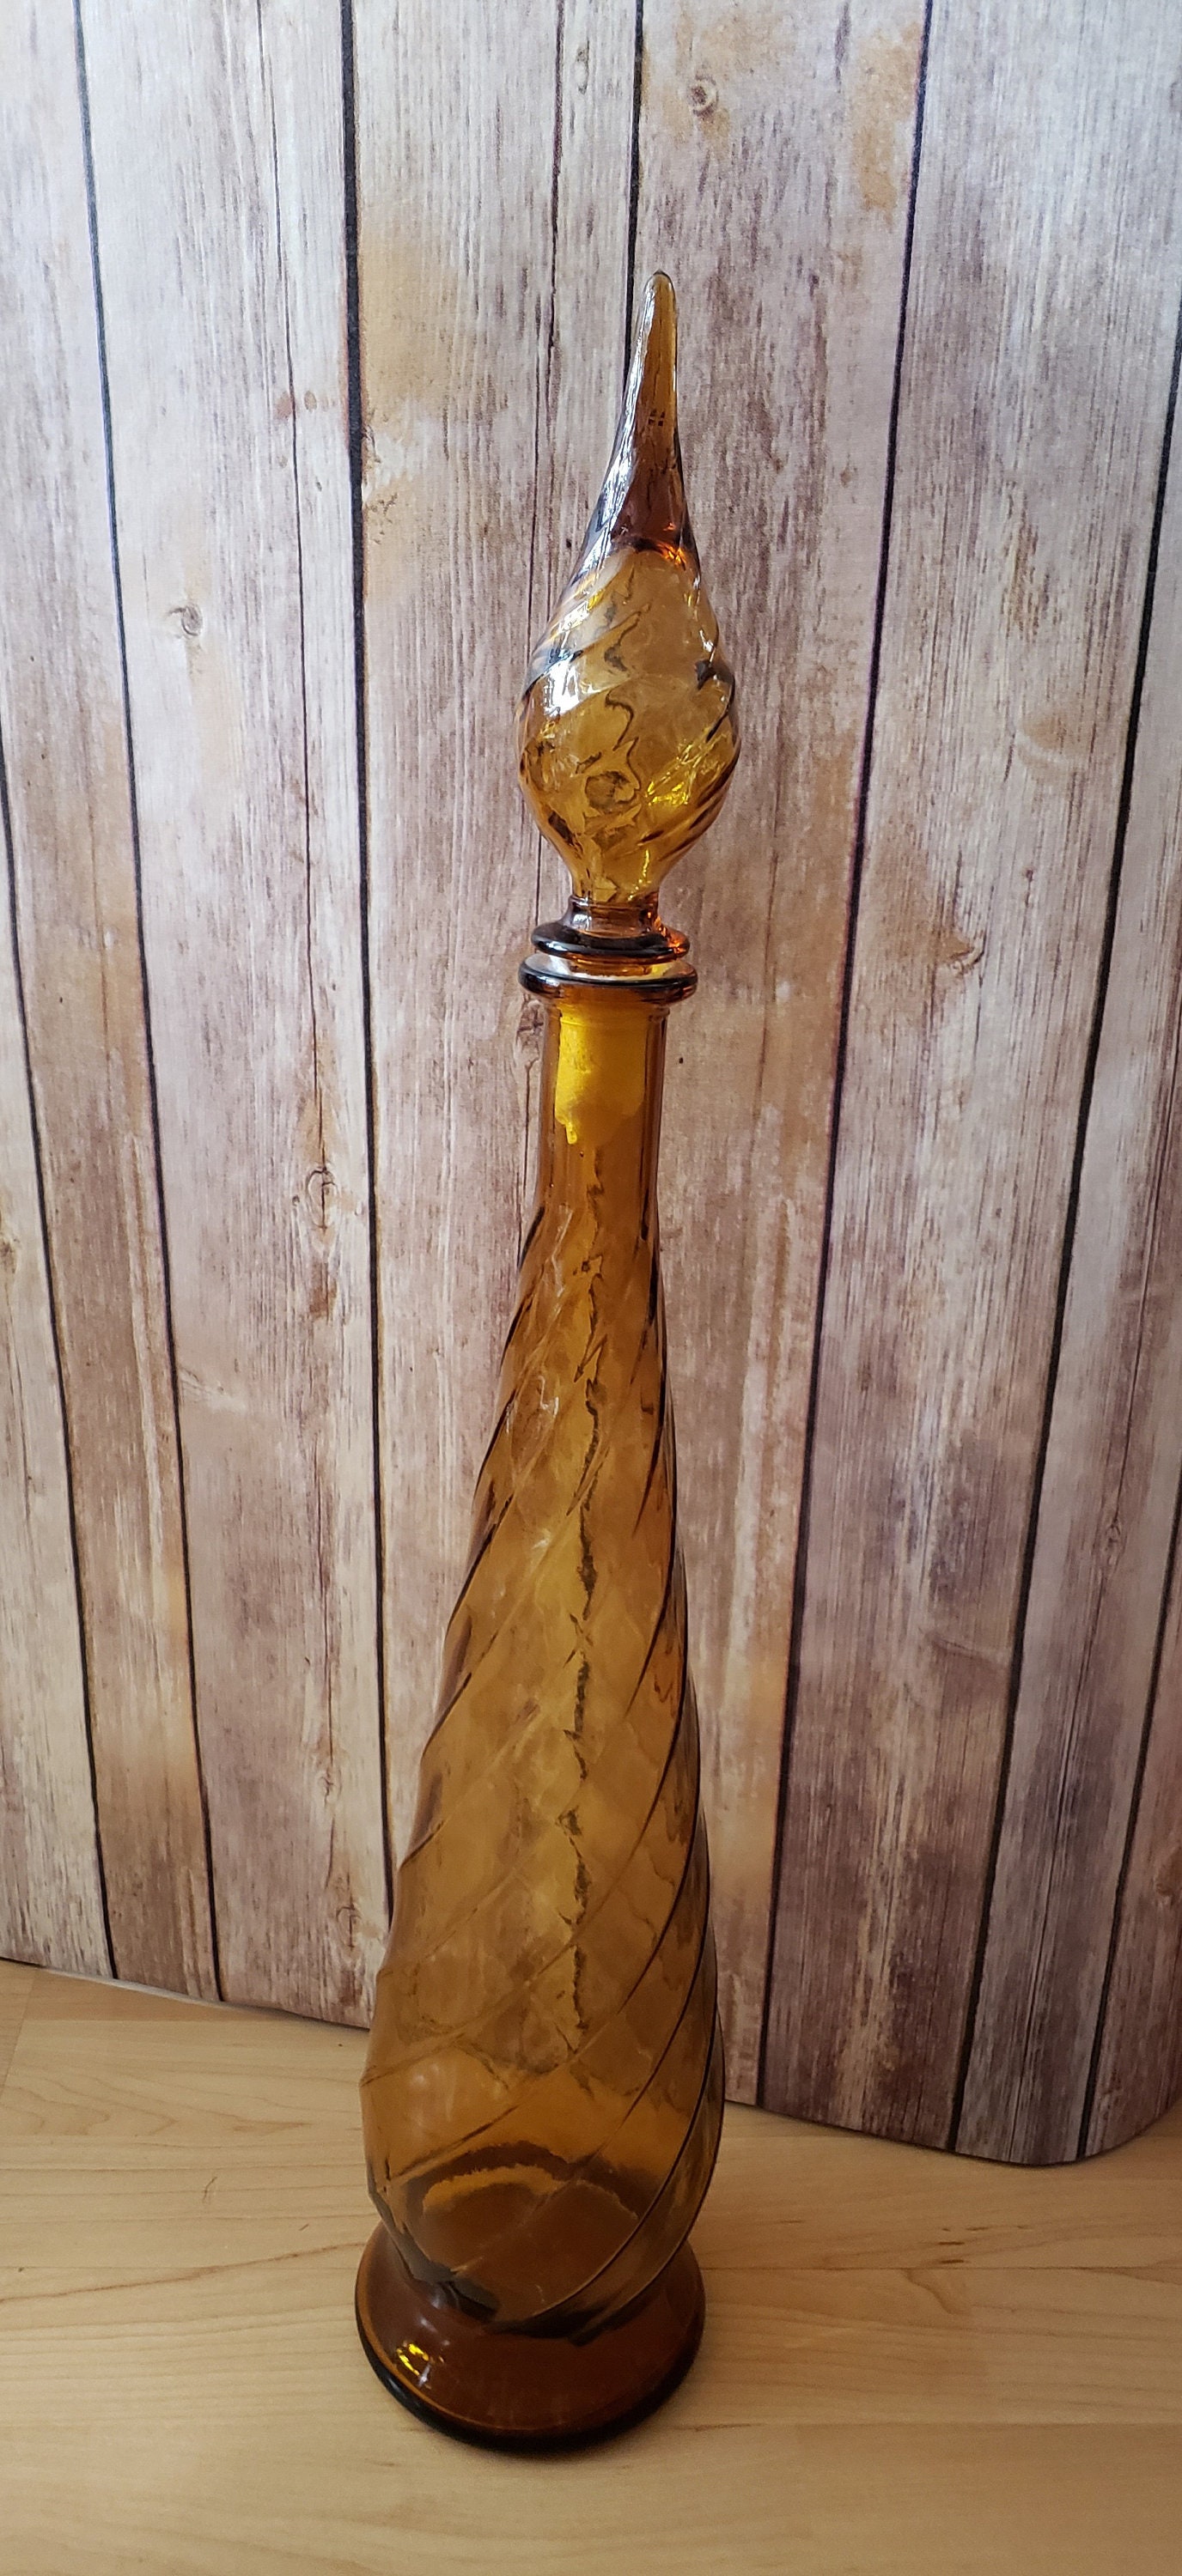 XL Amber SWIRL Pattern Glass Genie Bottle Decanter / Mid-century